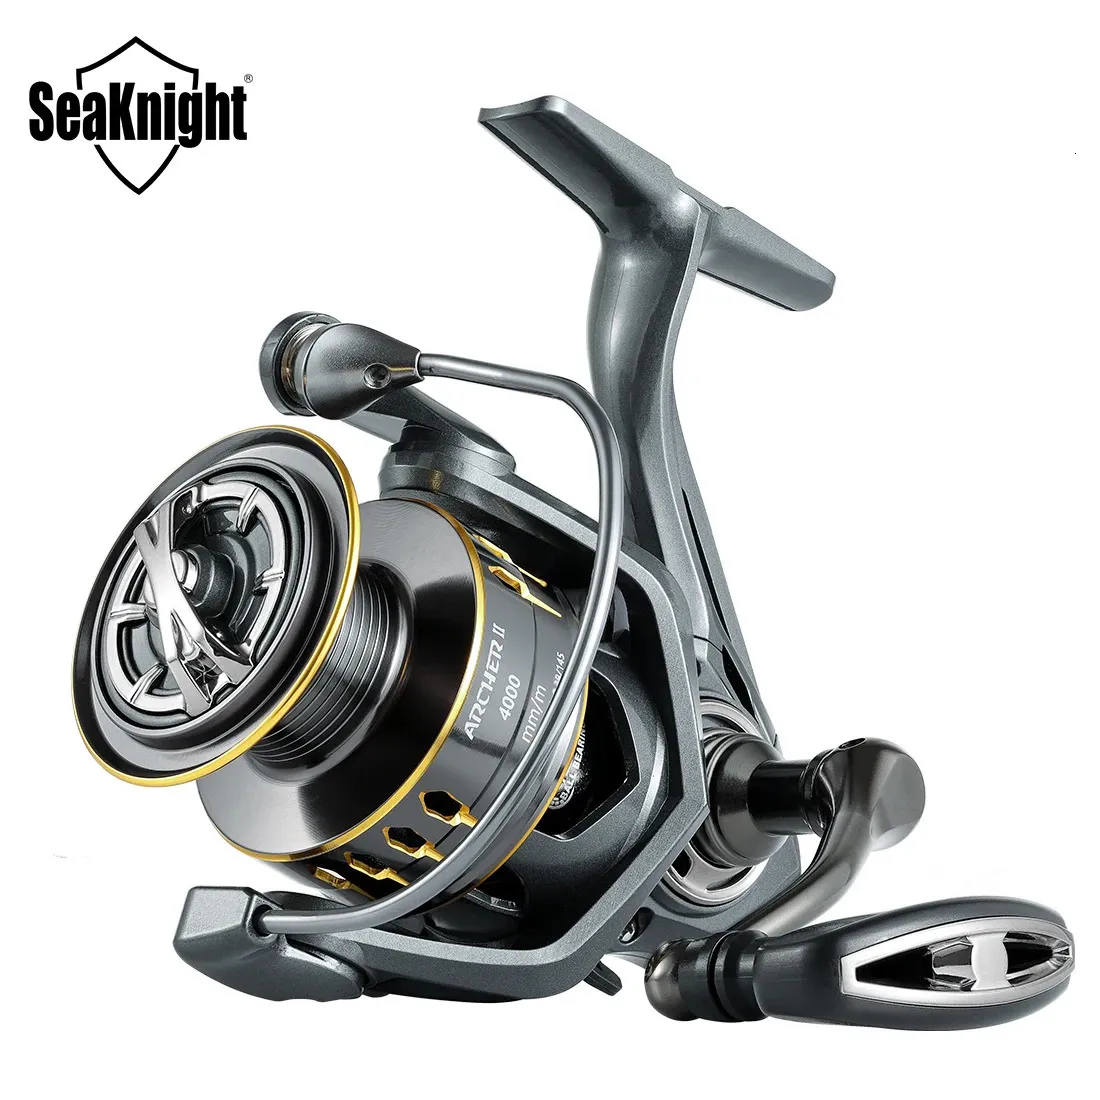 SeaKnight marque ARCHER2 série moulinet de pêche 5.2 1 4.9 1 puissance de traînée MAX 28lbs bobine en aluminium alarme de poisson moulinet de filature 2000-6000 240116